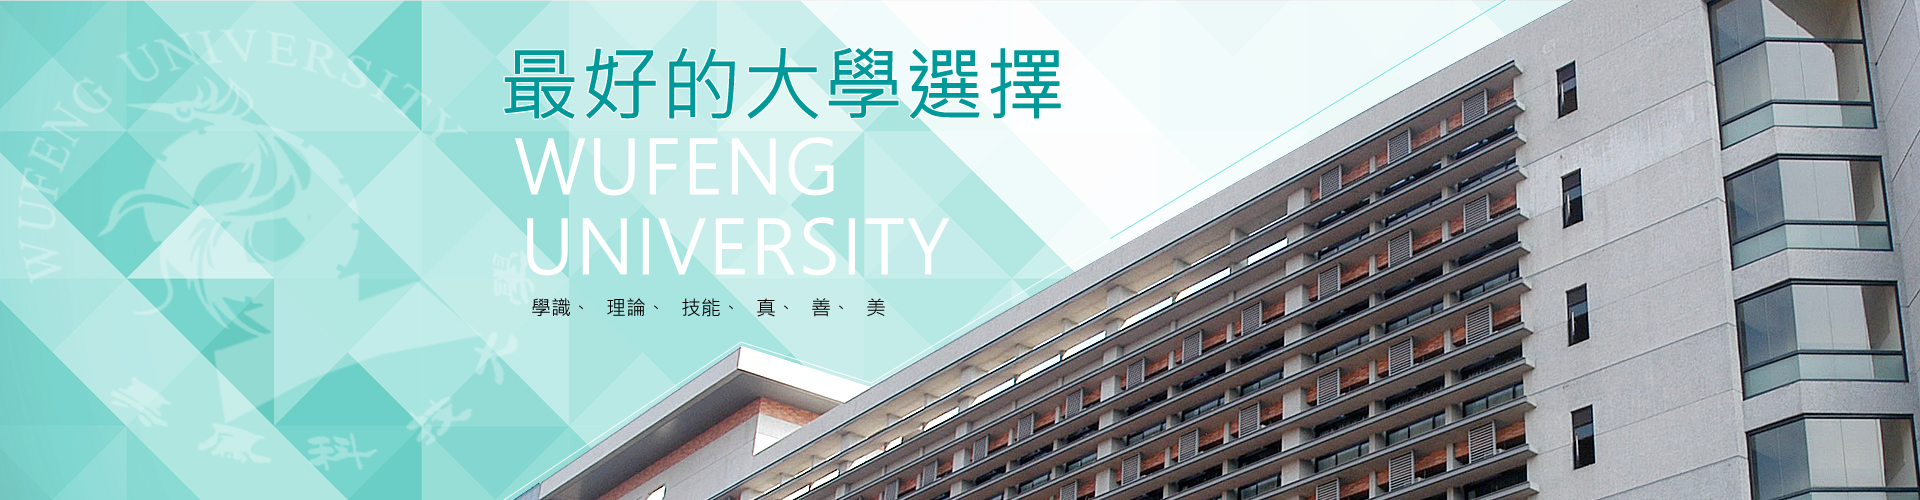 招生資訊網網頁橫幅-最好的大學選擇-吳鳳科技大學